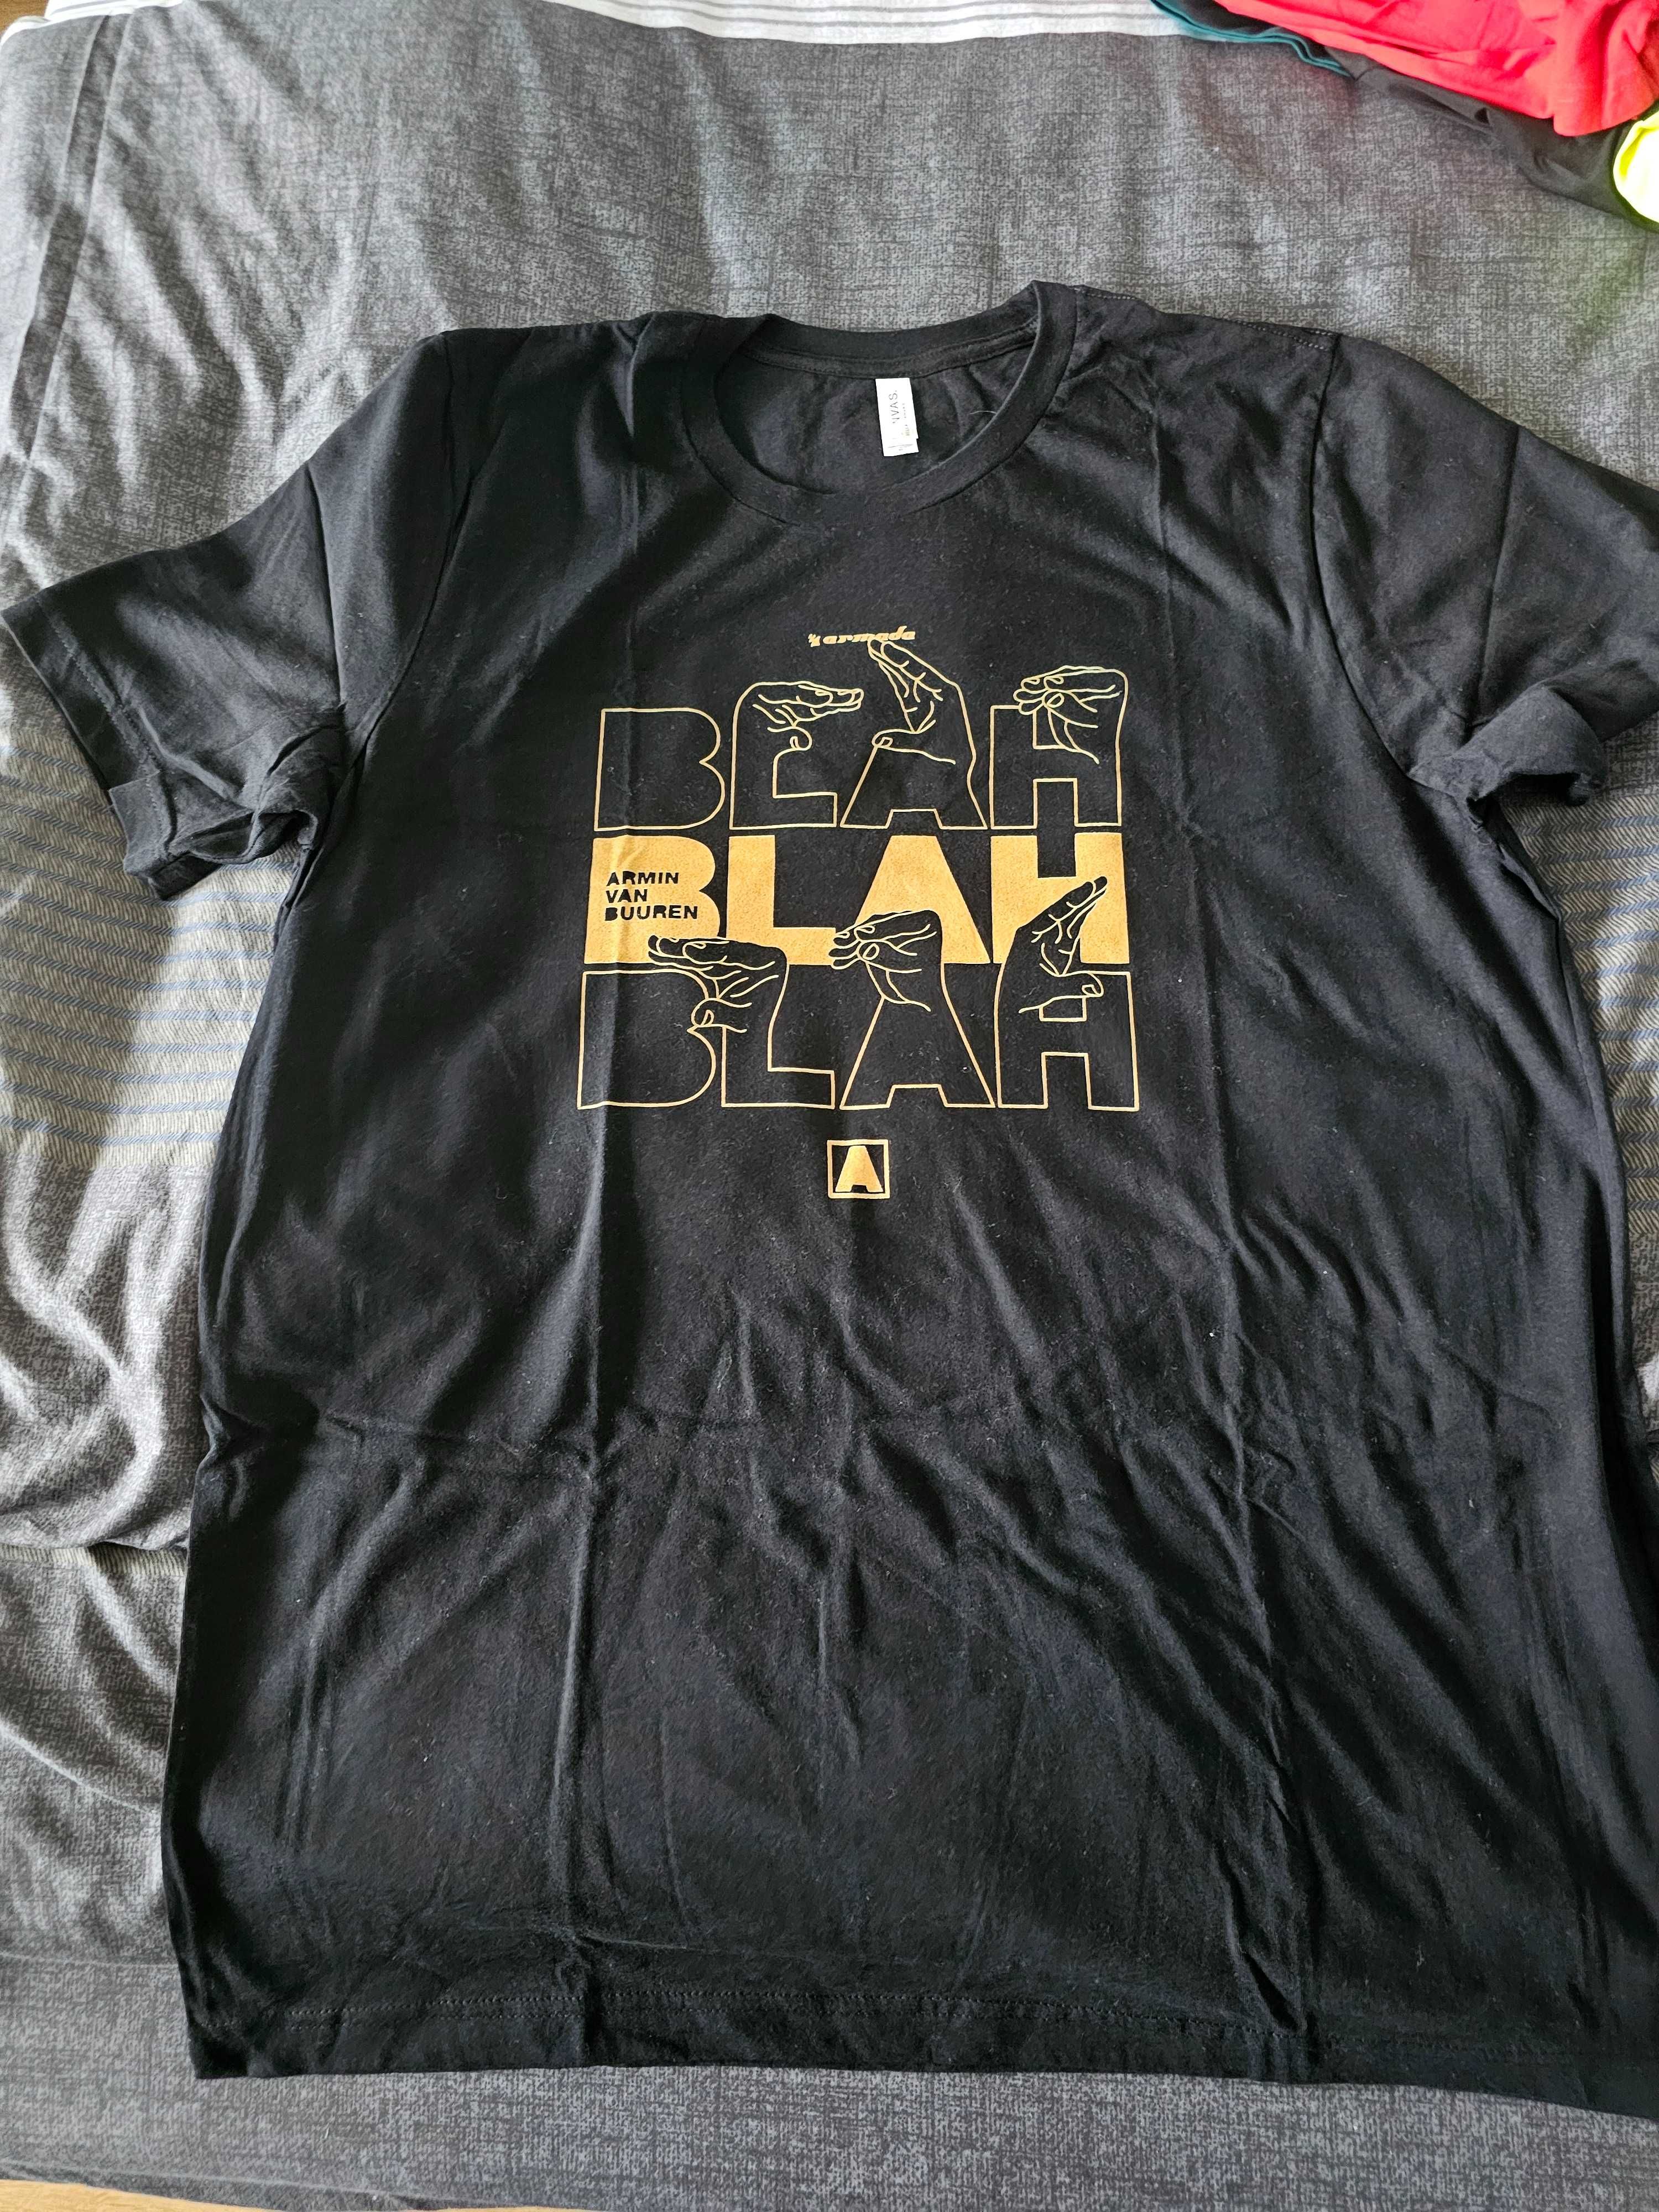 T-shirt Armin van Buuren BLAH BLAH BLAH XL